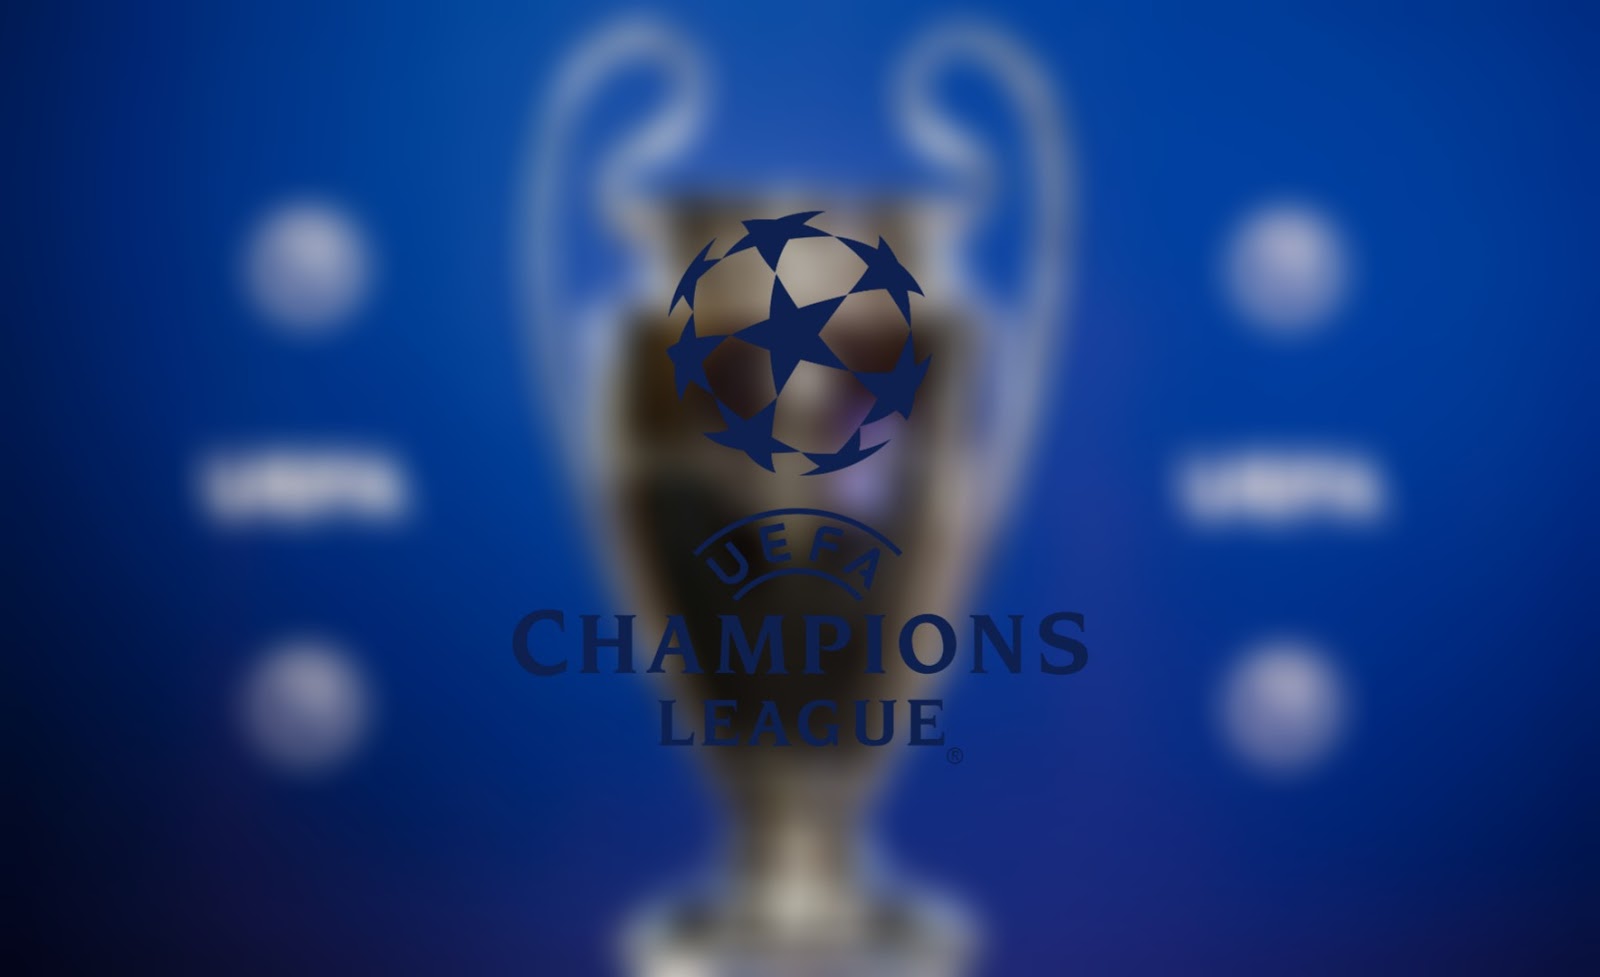 kedudukan champion league 2018